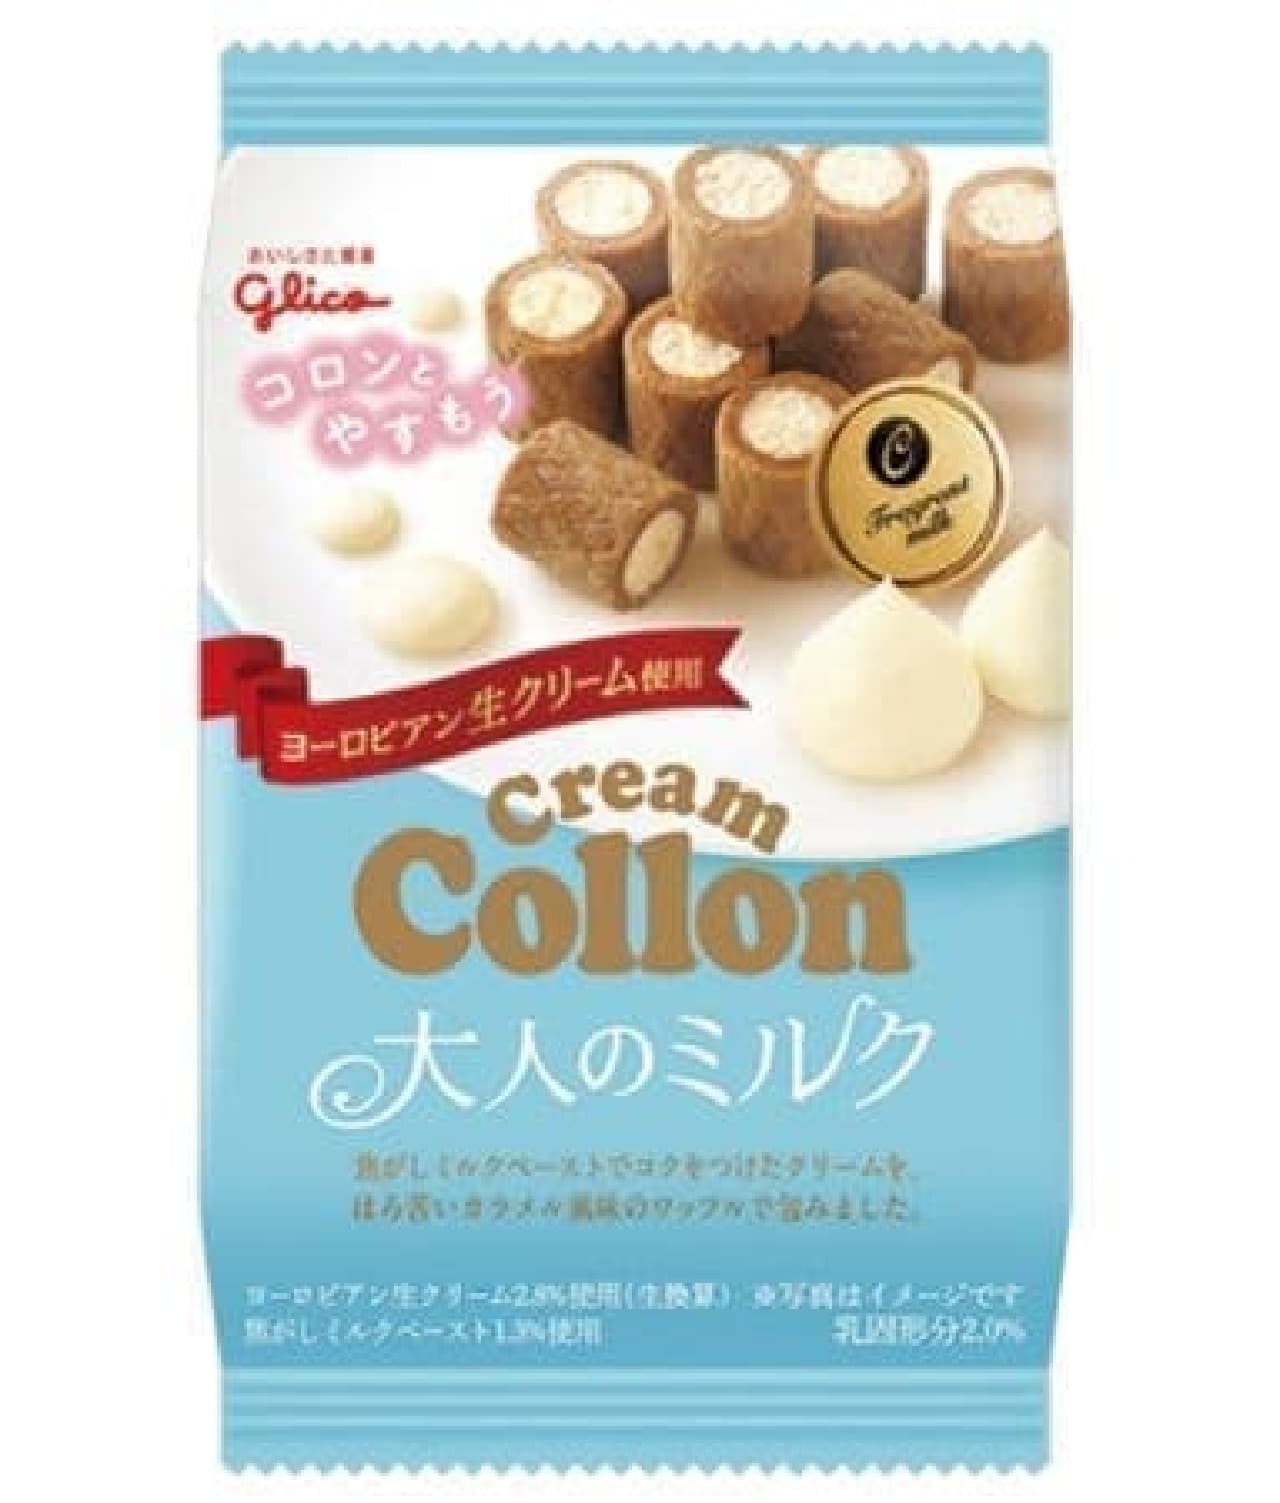 Glico cream colon bag Adult milk